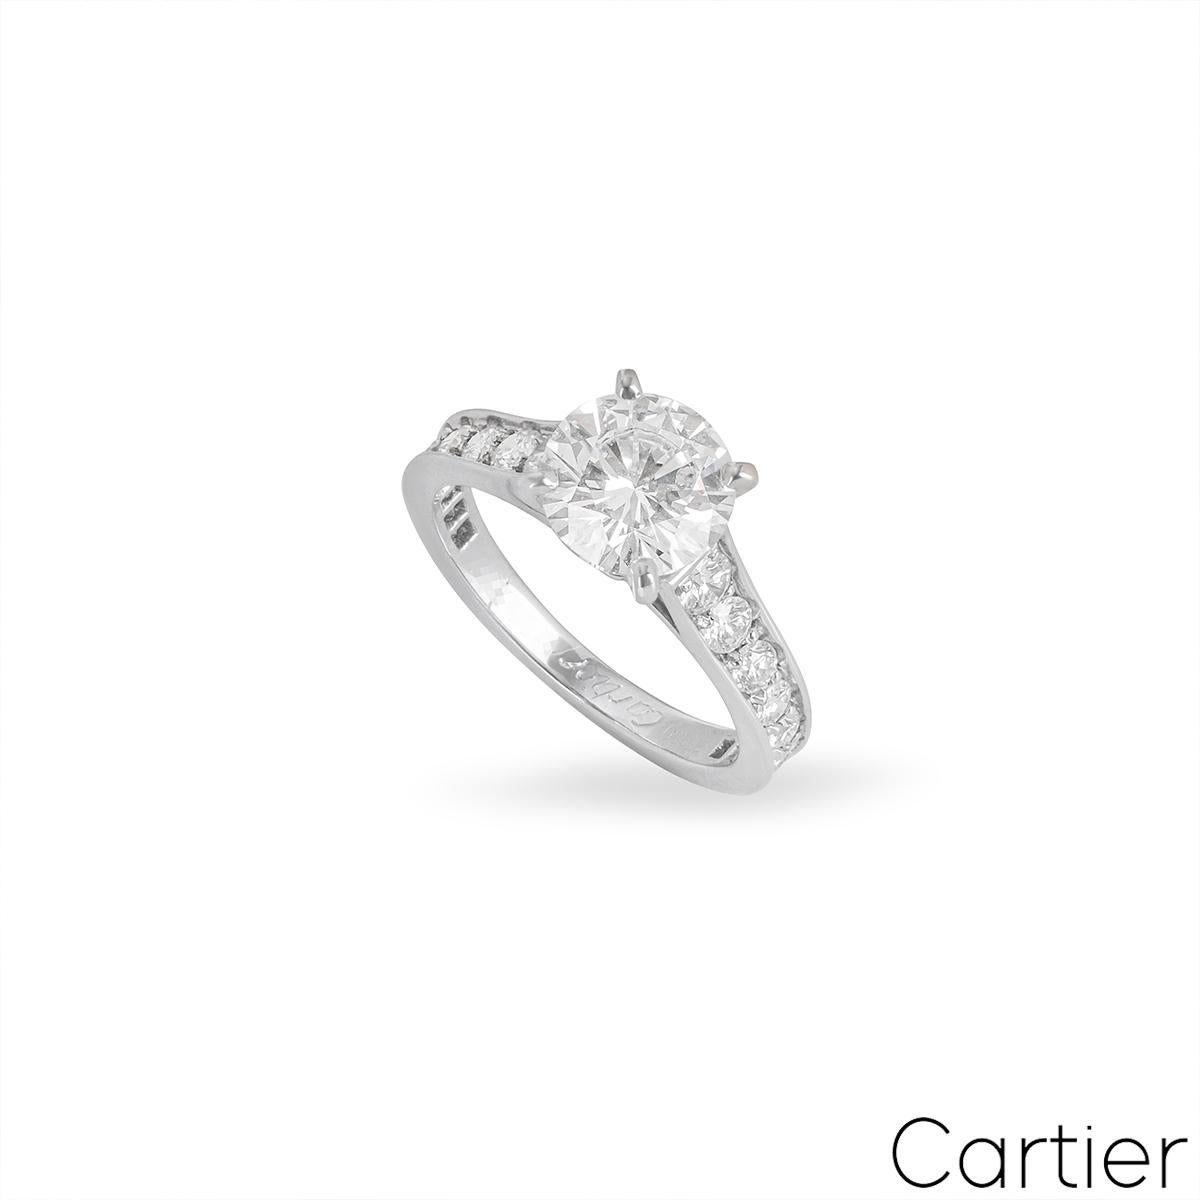 Ein schöner Platin-Diamantring aus der Kollektion Solitaire 1895 von Cartier. In der Mitte des Rings befindet sich ein runder Diamant im Brillantschliff von 1,70 Karat, Farbe G und Reinheit VVS1. Der Ring hat spitz zulaufende, mit Diamanten besetzte